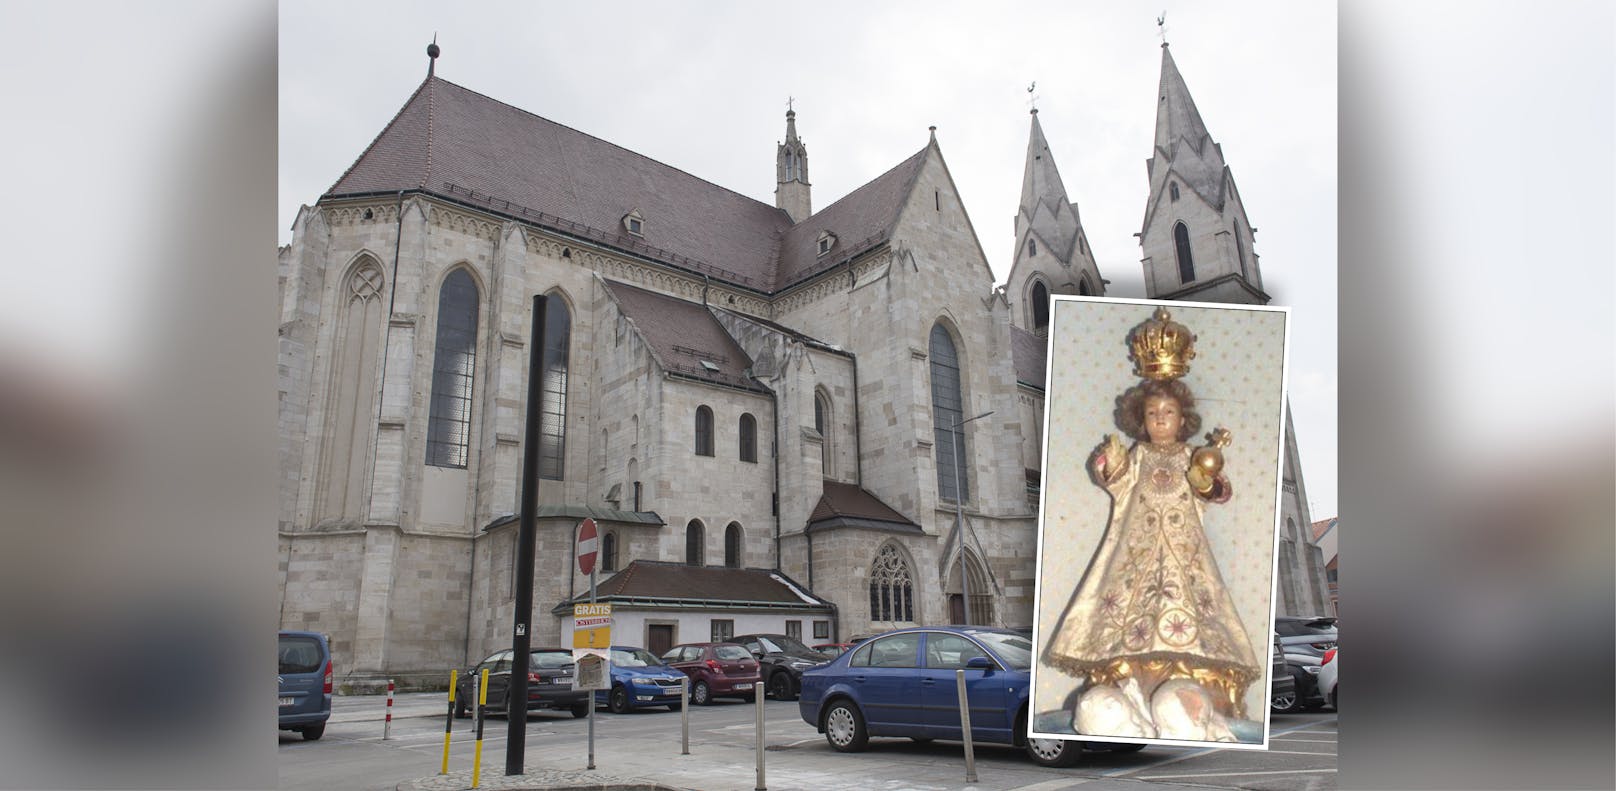 Diese Statue "Prager Jesuskind" wurde aus dem Dom gestohlen.